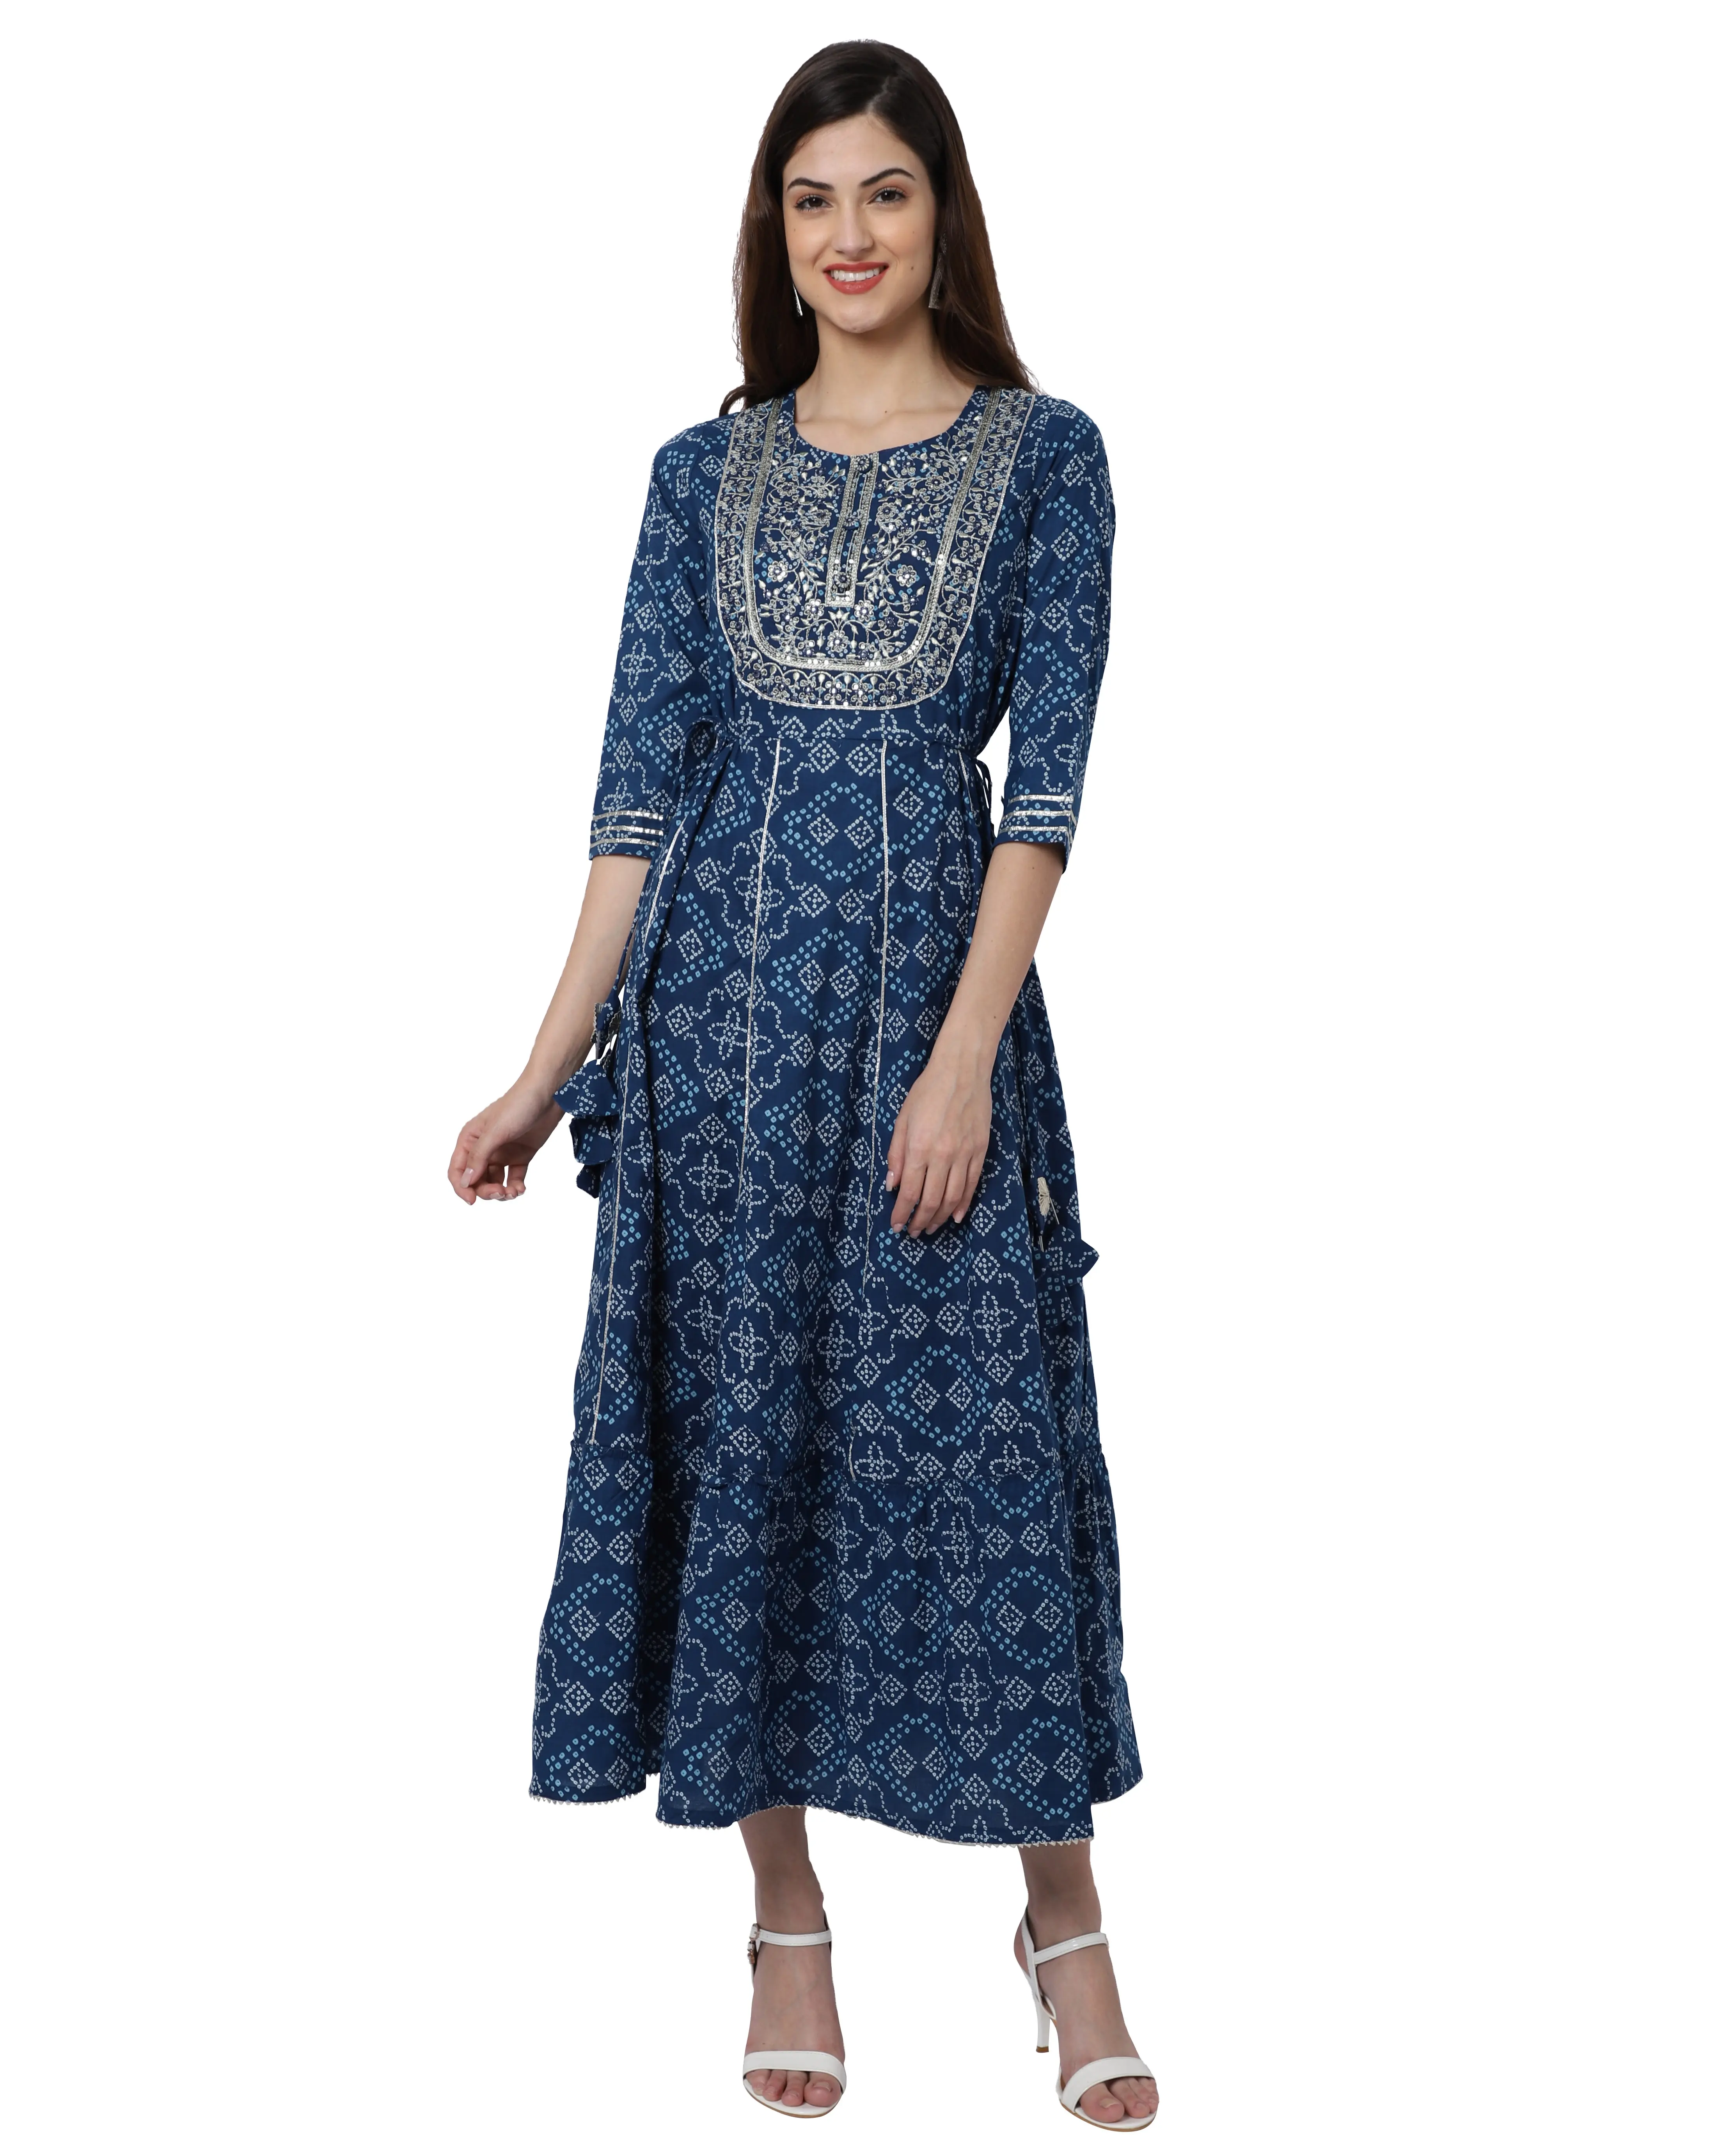 Rajnandini Exclusieve Traditionele Designer Blauwe Kleur Kurti Voor Mooie Vrouwen Voor Casual Dagelijkse Kantoorkleding Look